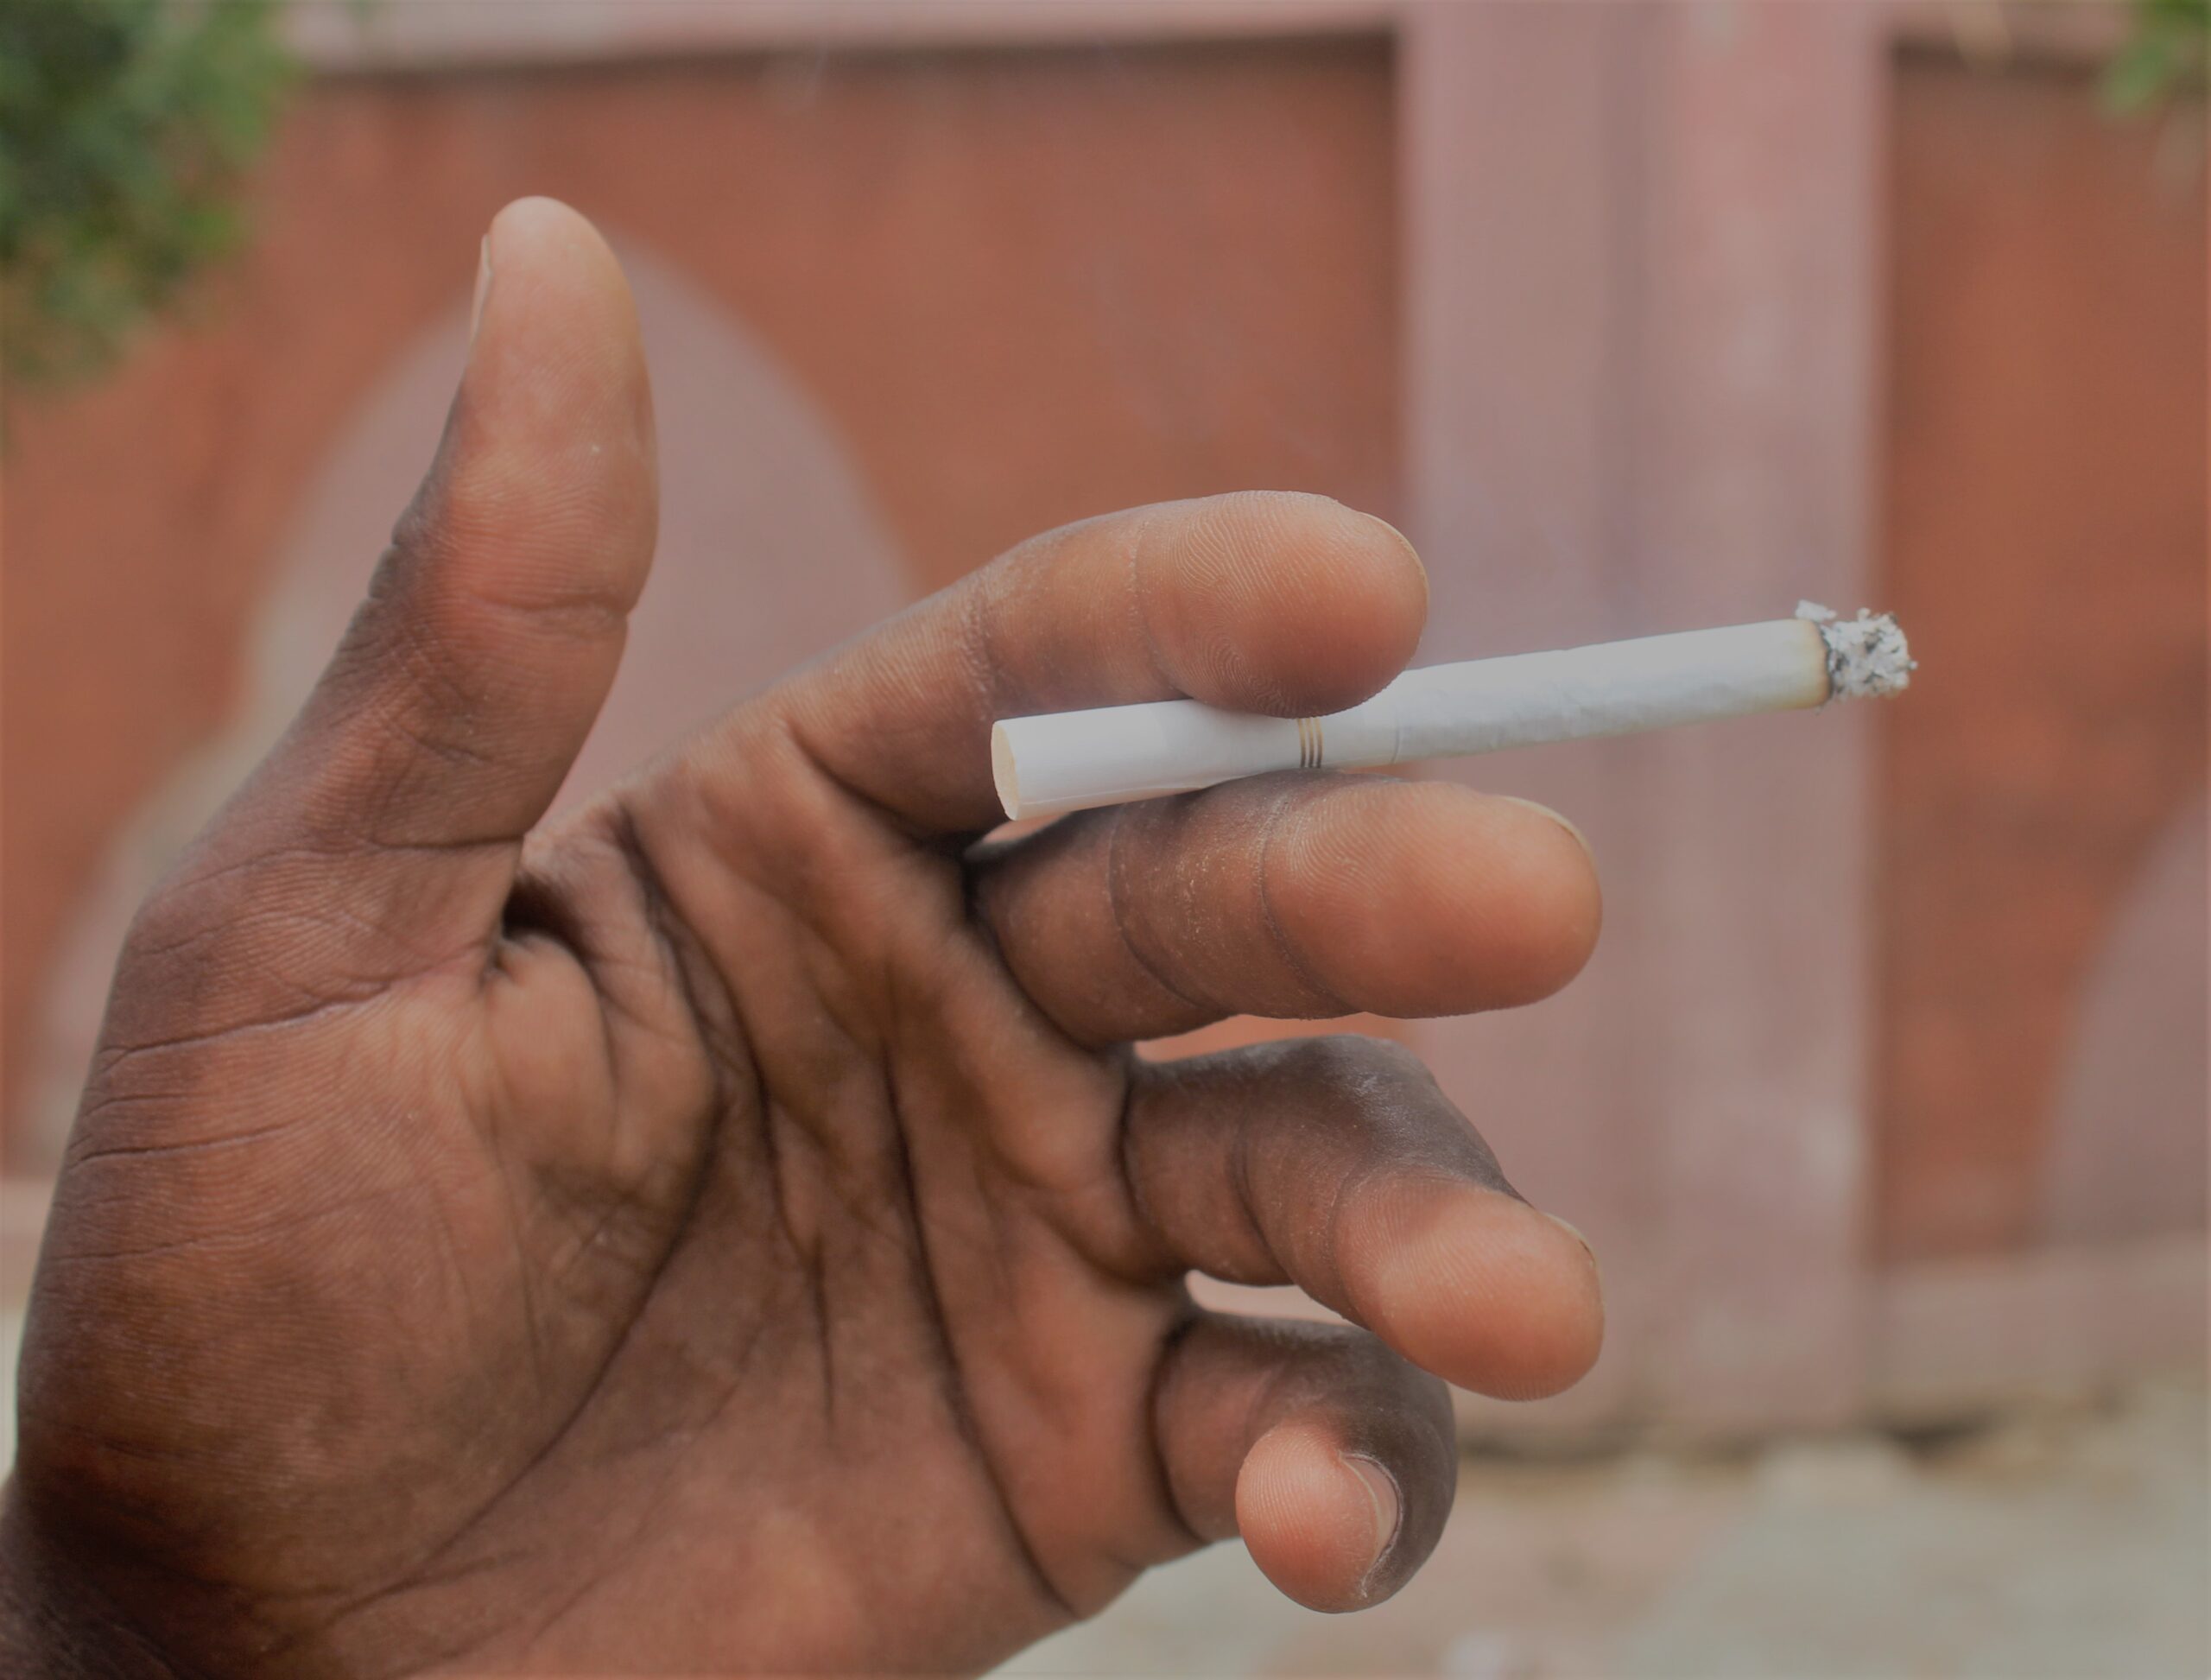 Lutte antitabac : 15 jours de prison, 30 000 francs, ce que vous encourez en fumant dans les lieux publics